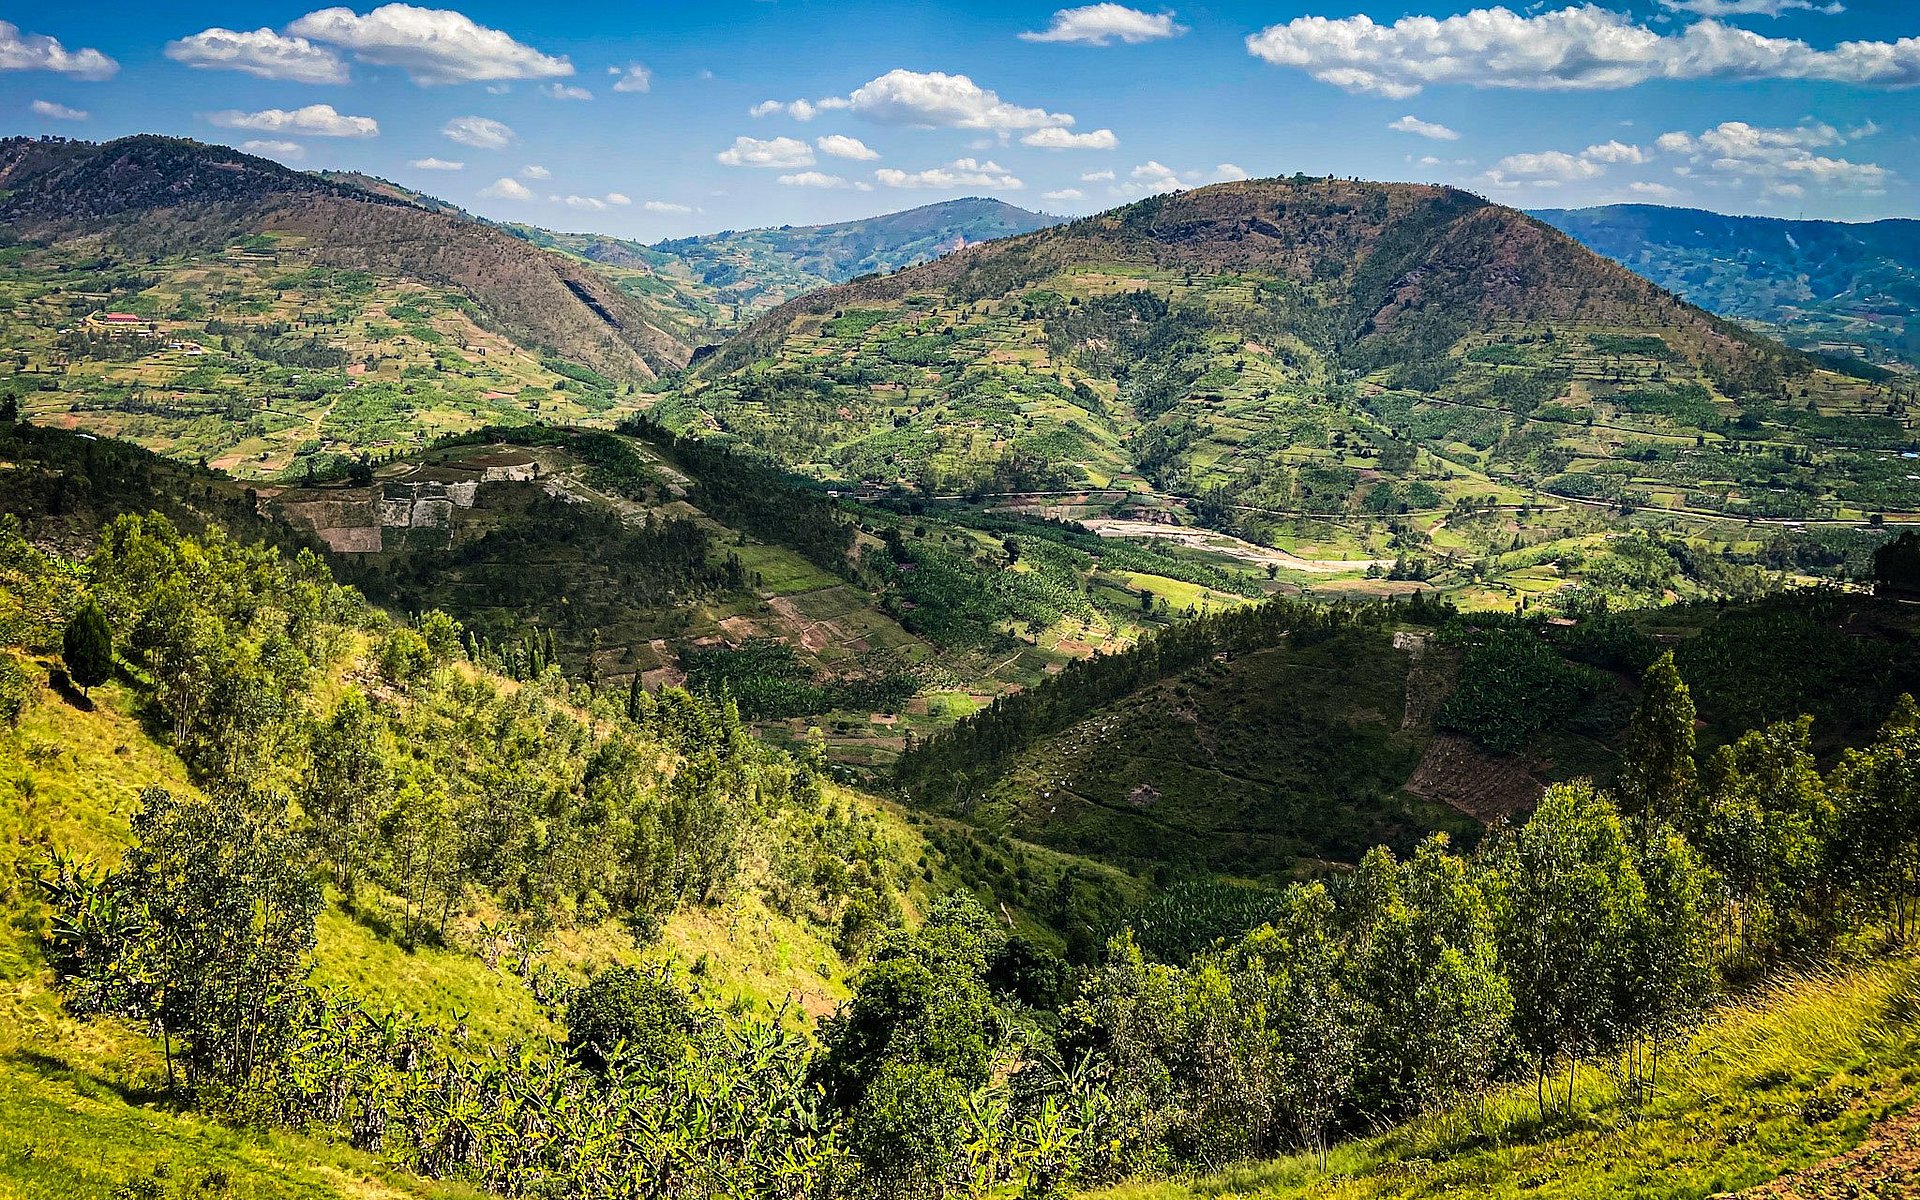 Ruanda wird aufgrund seiner Topographie das "Land der tausend Hügel" genannt.